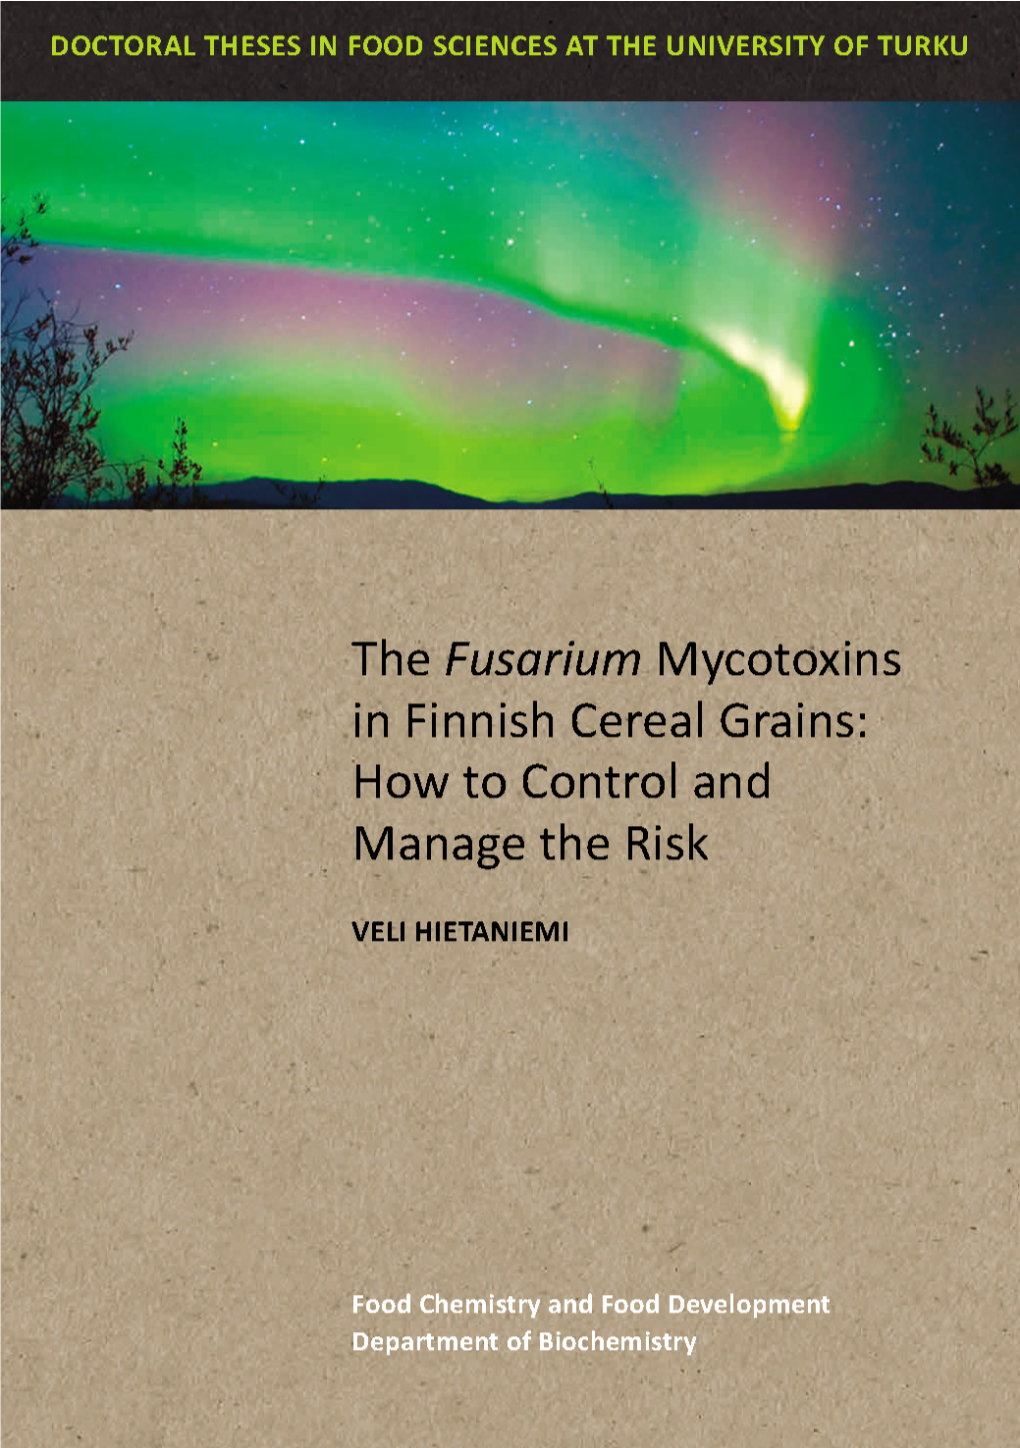 Veli Hietaniemi – the Fusarium Mycotoxins in Finnish Cereal Grains